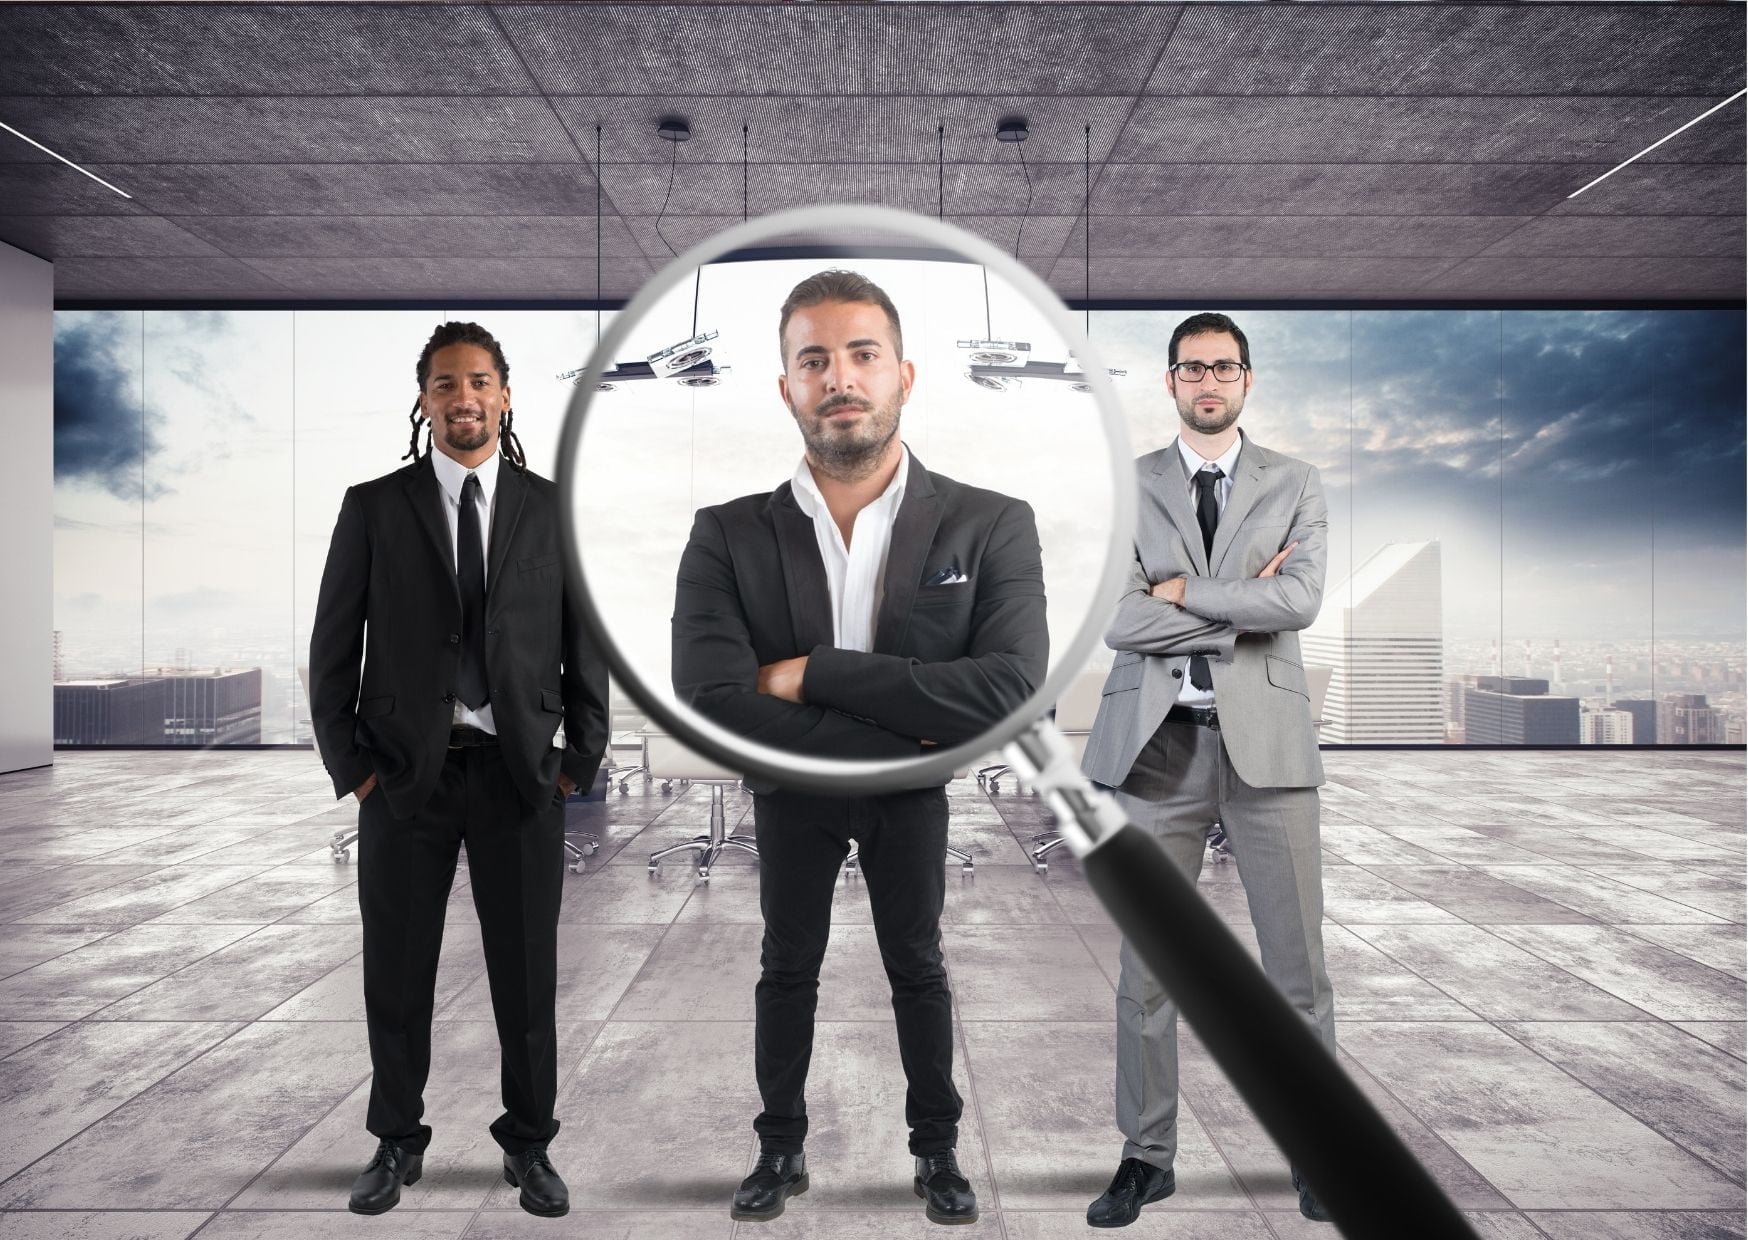 HR professionals: recruiting technology. Unconscious bias talent acquisition. 